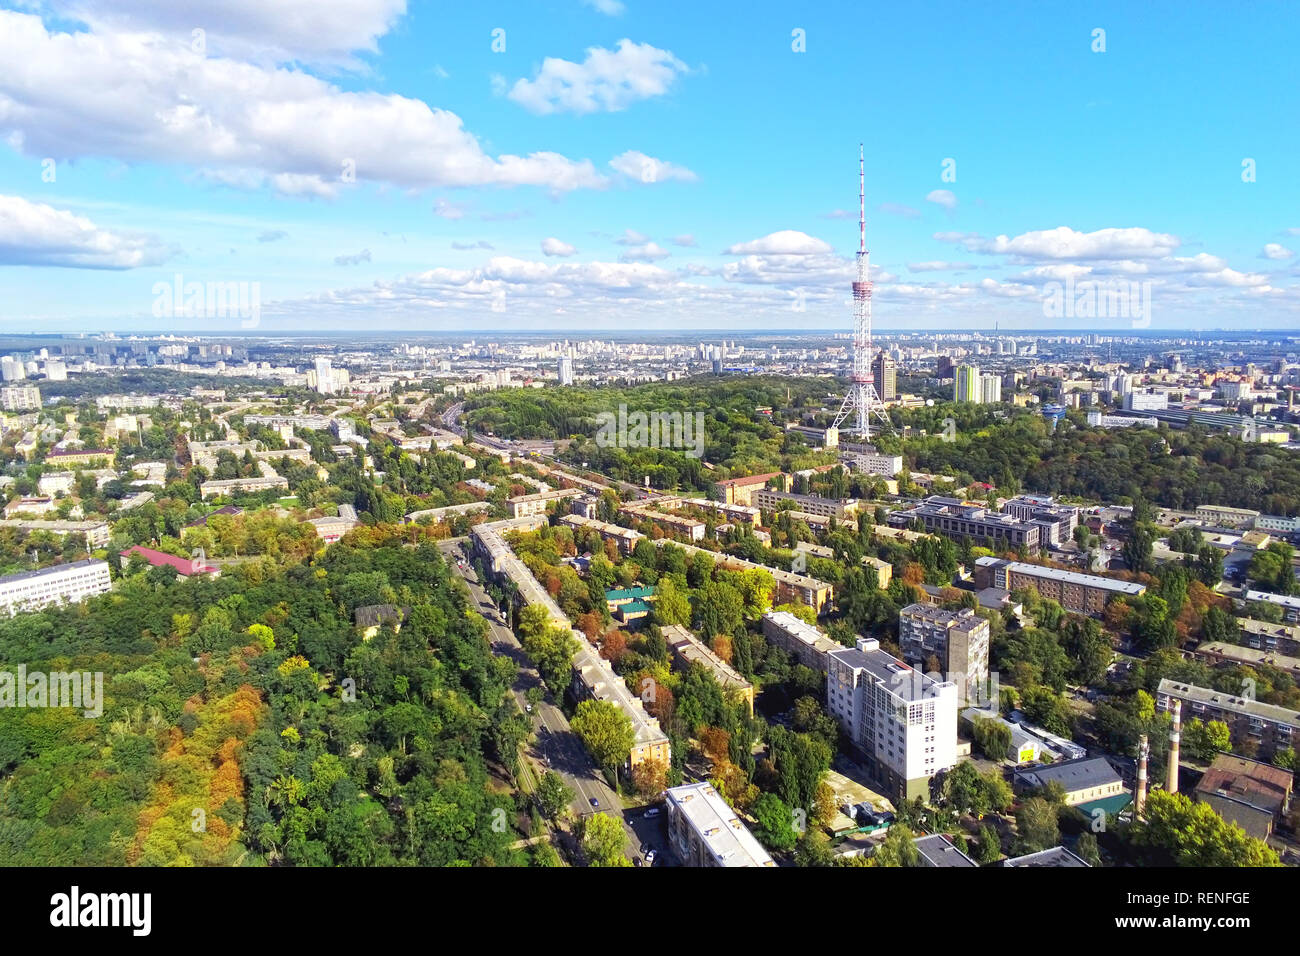 Vue aérienne de la ville de Kiev avec rues park et tour de télévision en acier haute contre le ciel bleu om journée ensoleillée Banque D'Images